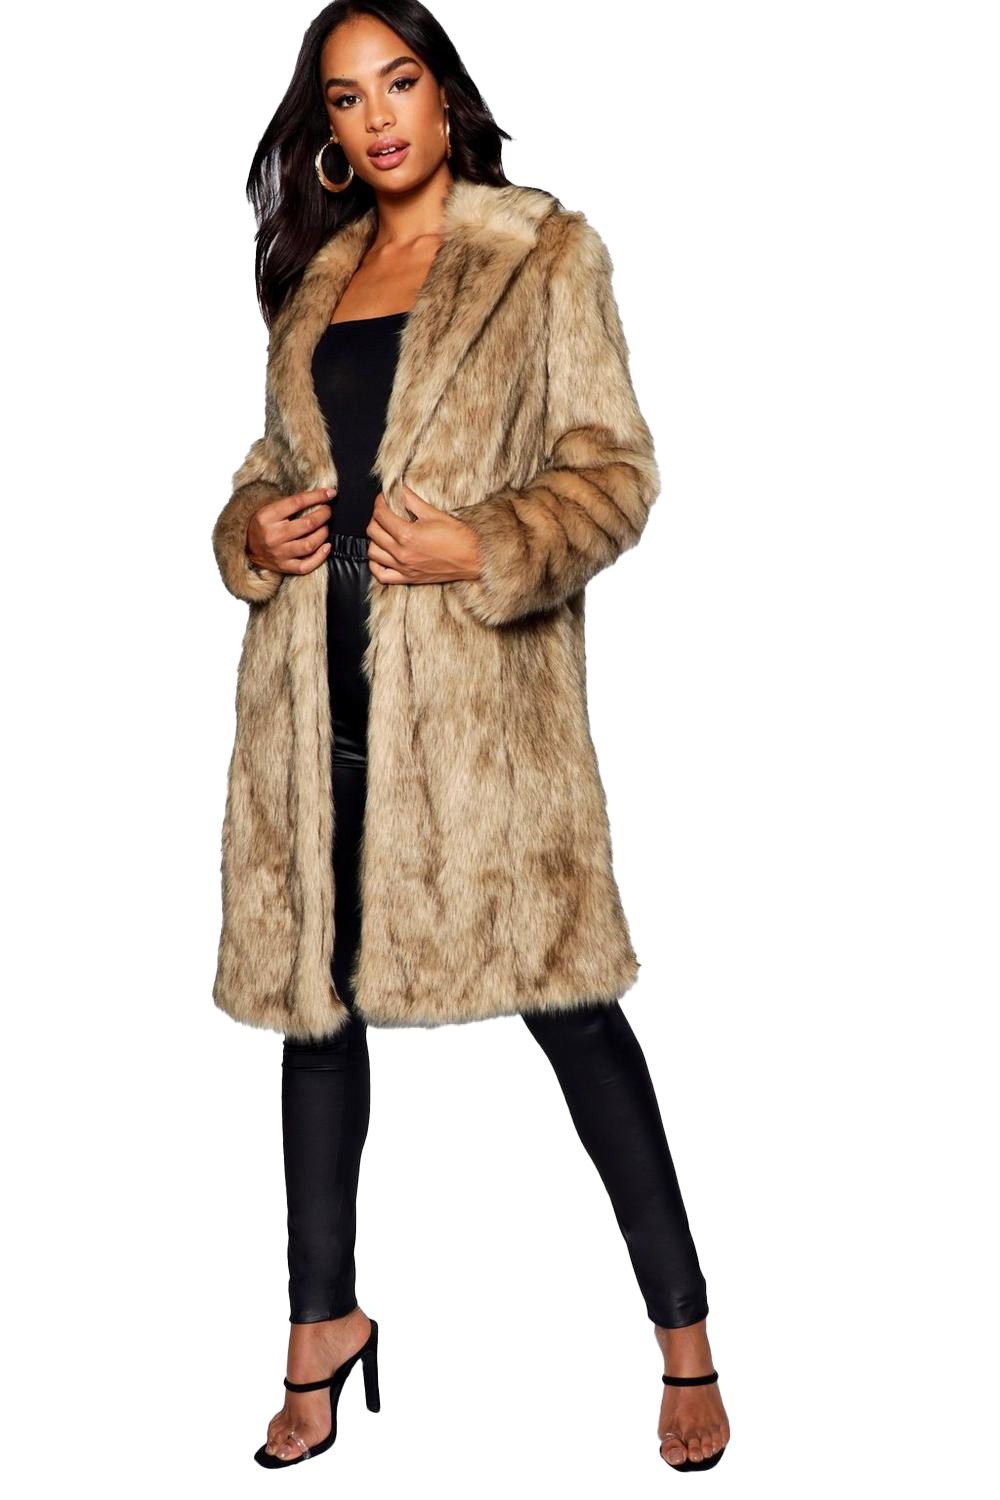 Fur Coat PNG File Download Free